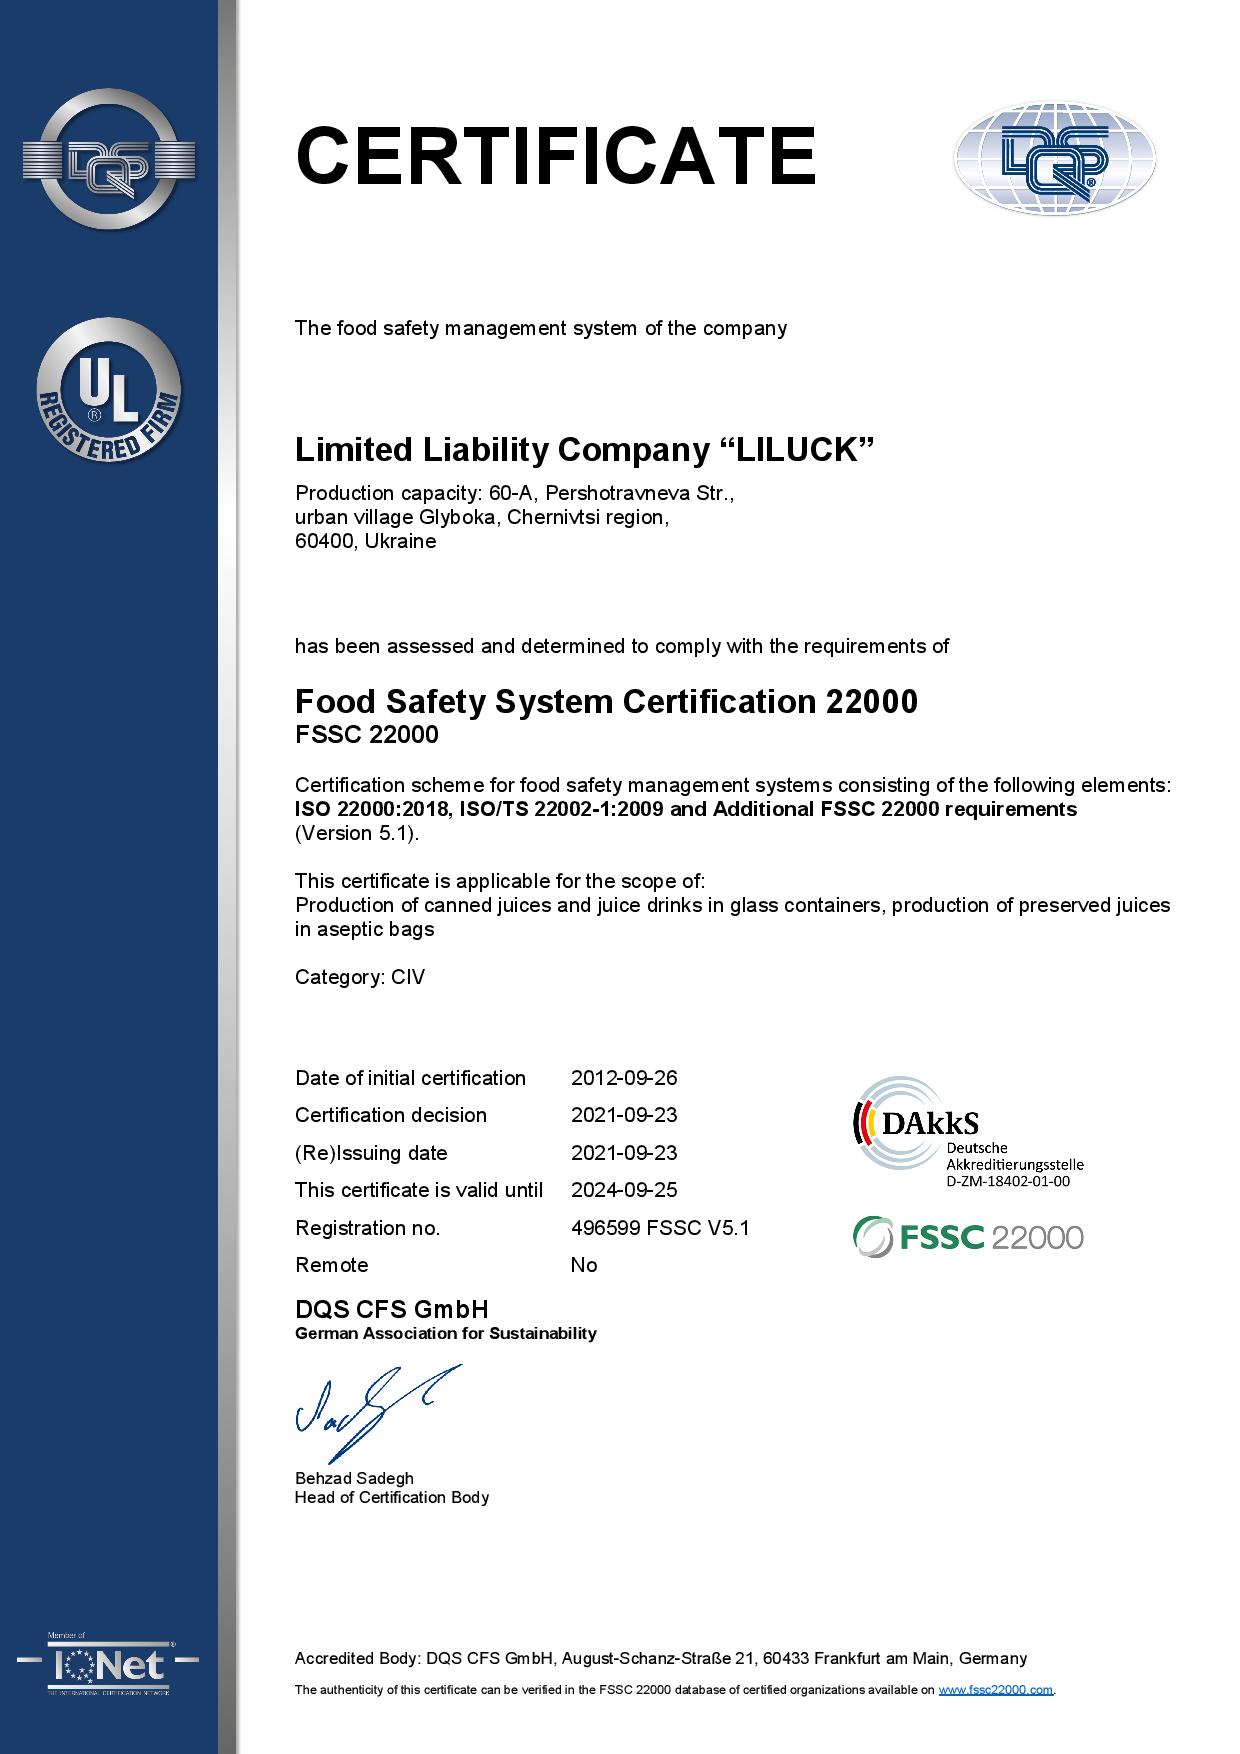 FSS certification